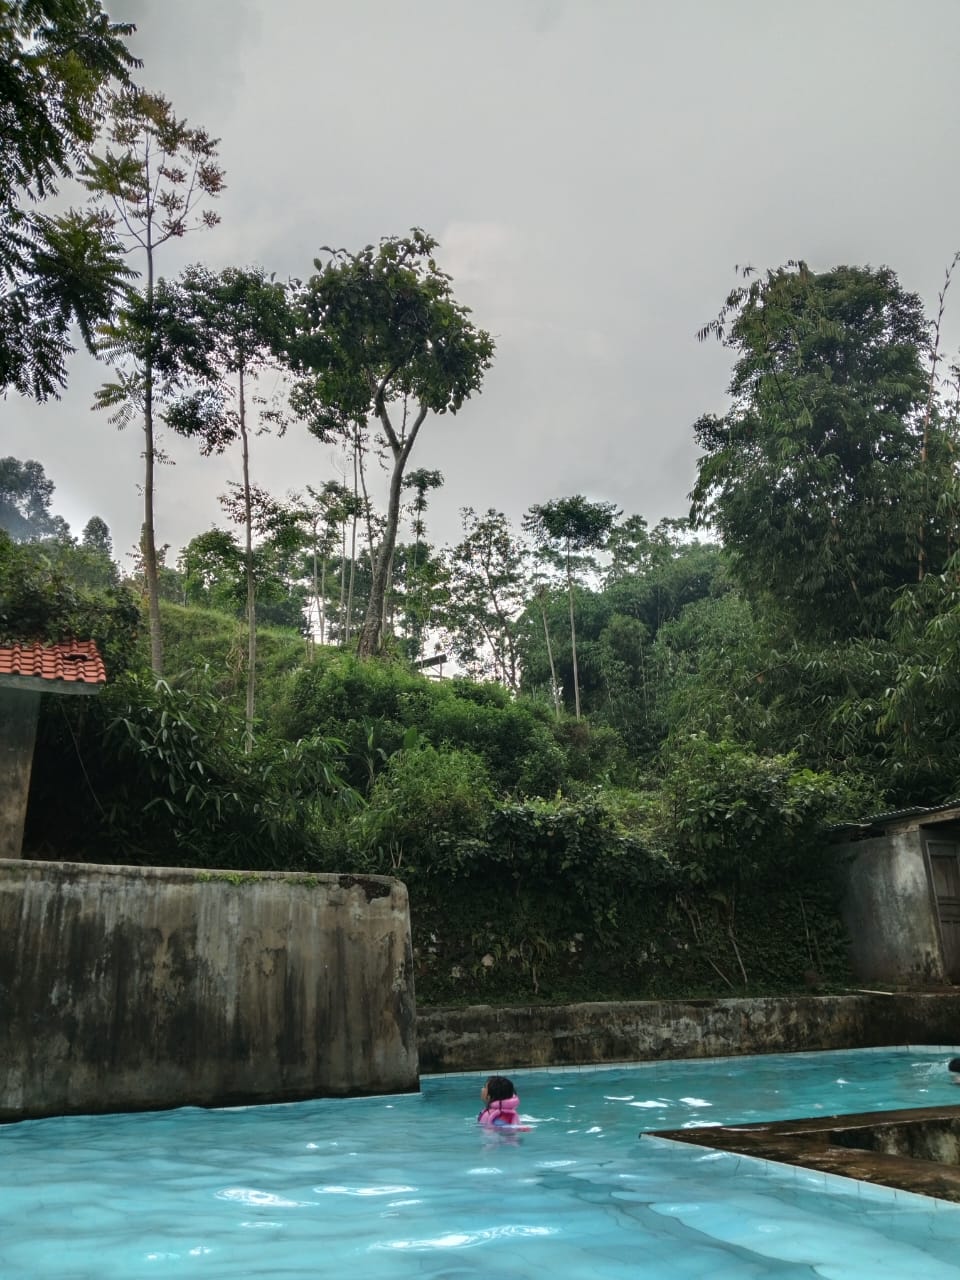 Paniisan Cippo, salah satu wisata air di Bandung